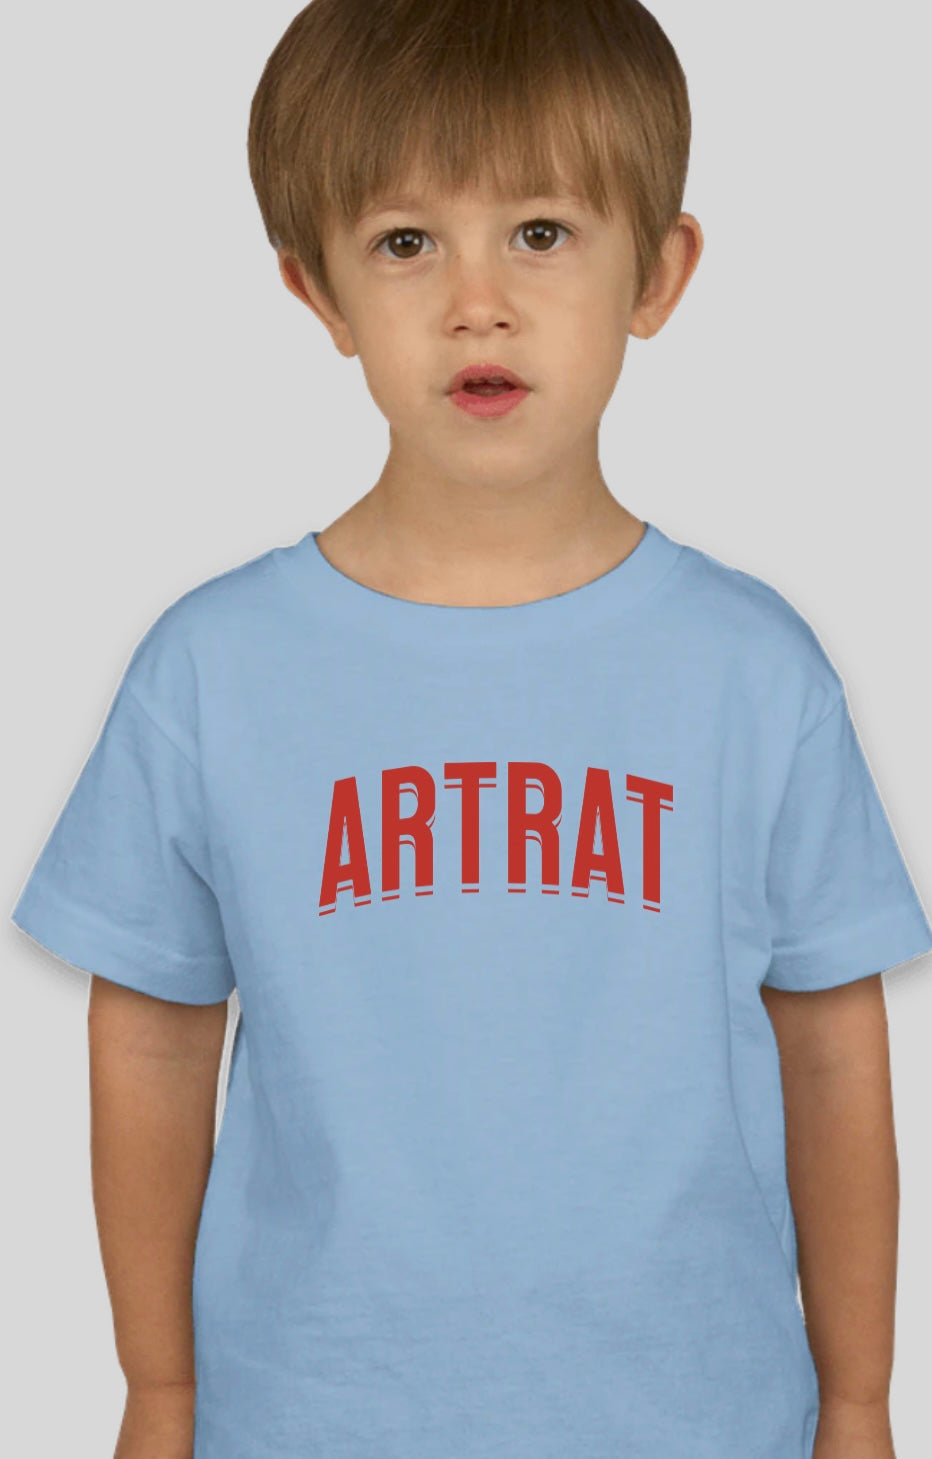 Kids ArtRat Logo Tee Shirt — Soft Blue and Light Yellow —  Short Sleeve Tee